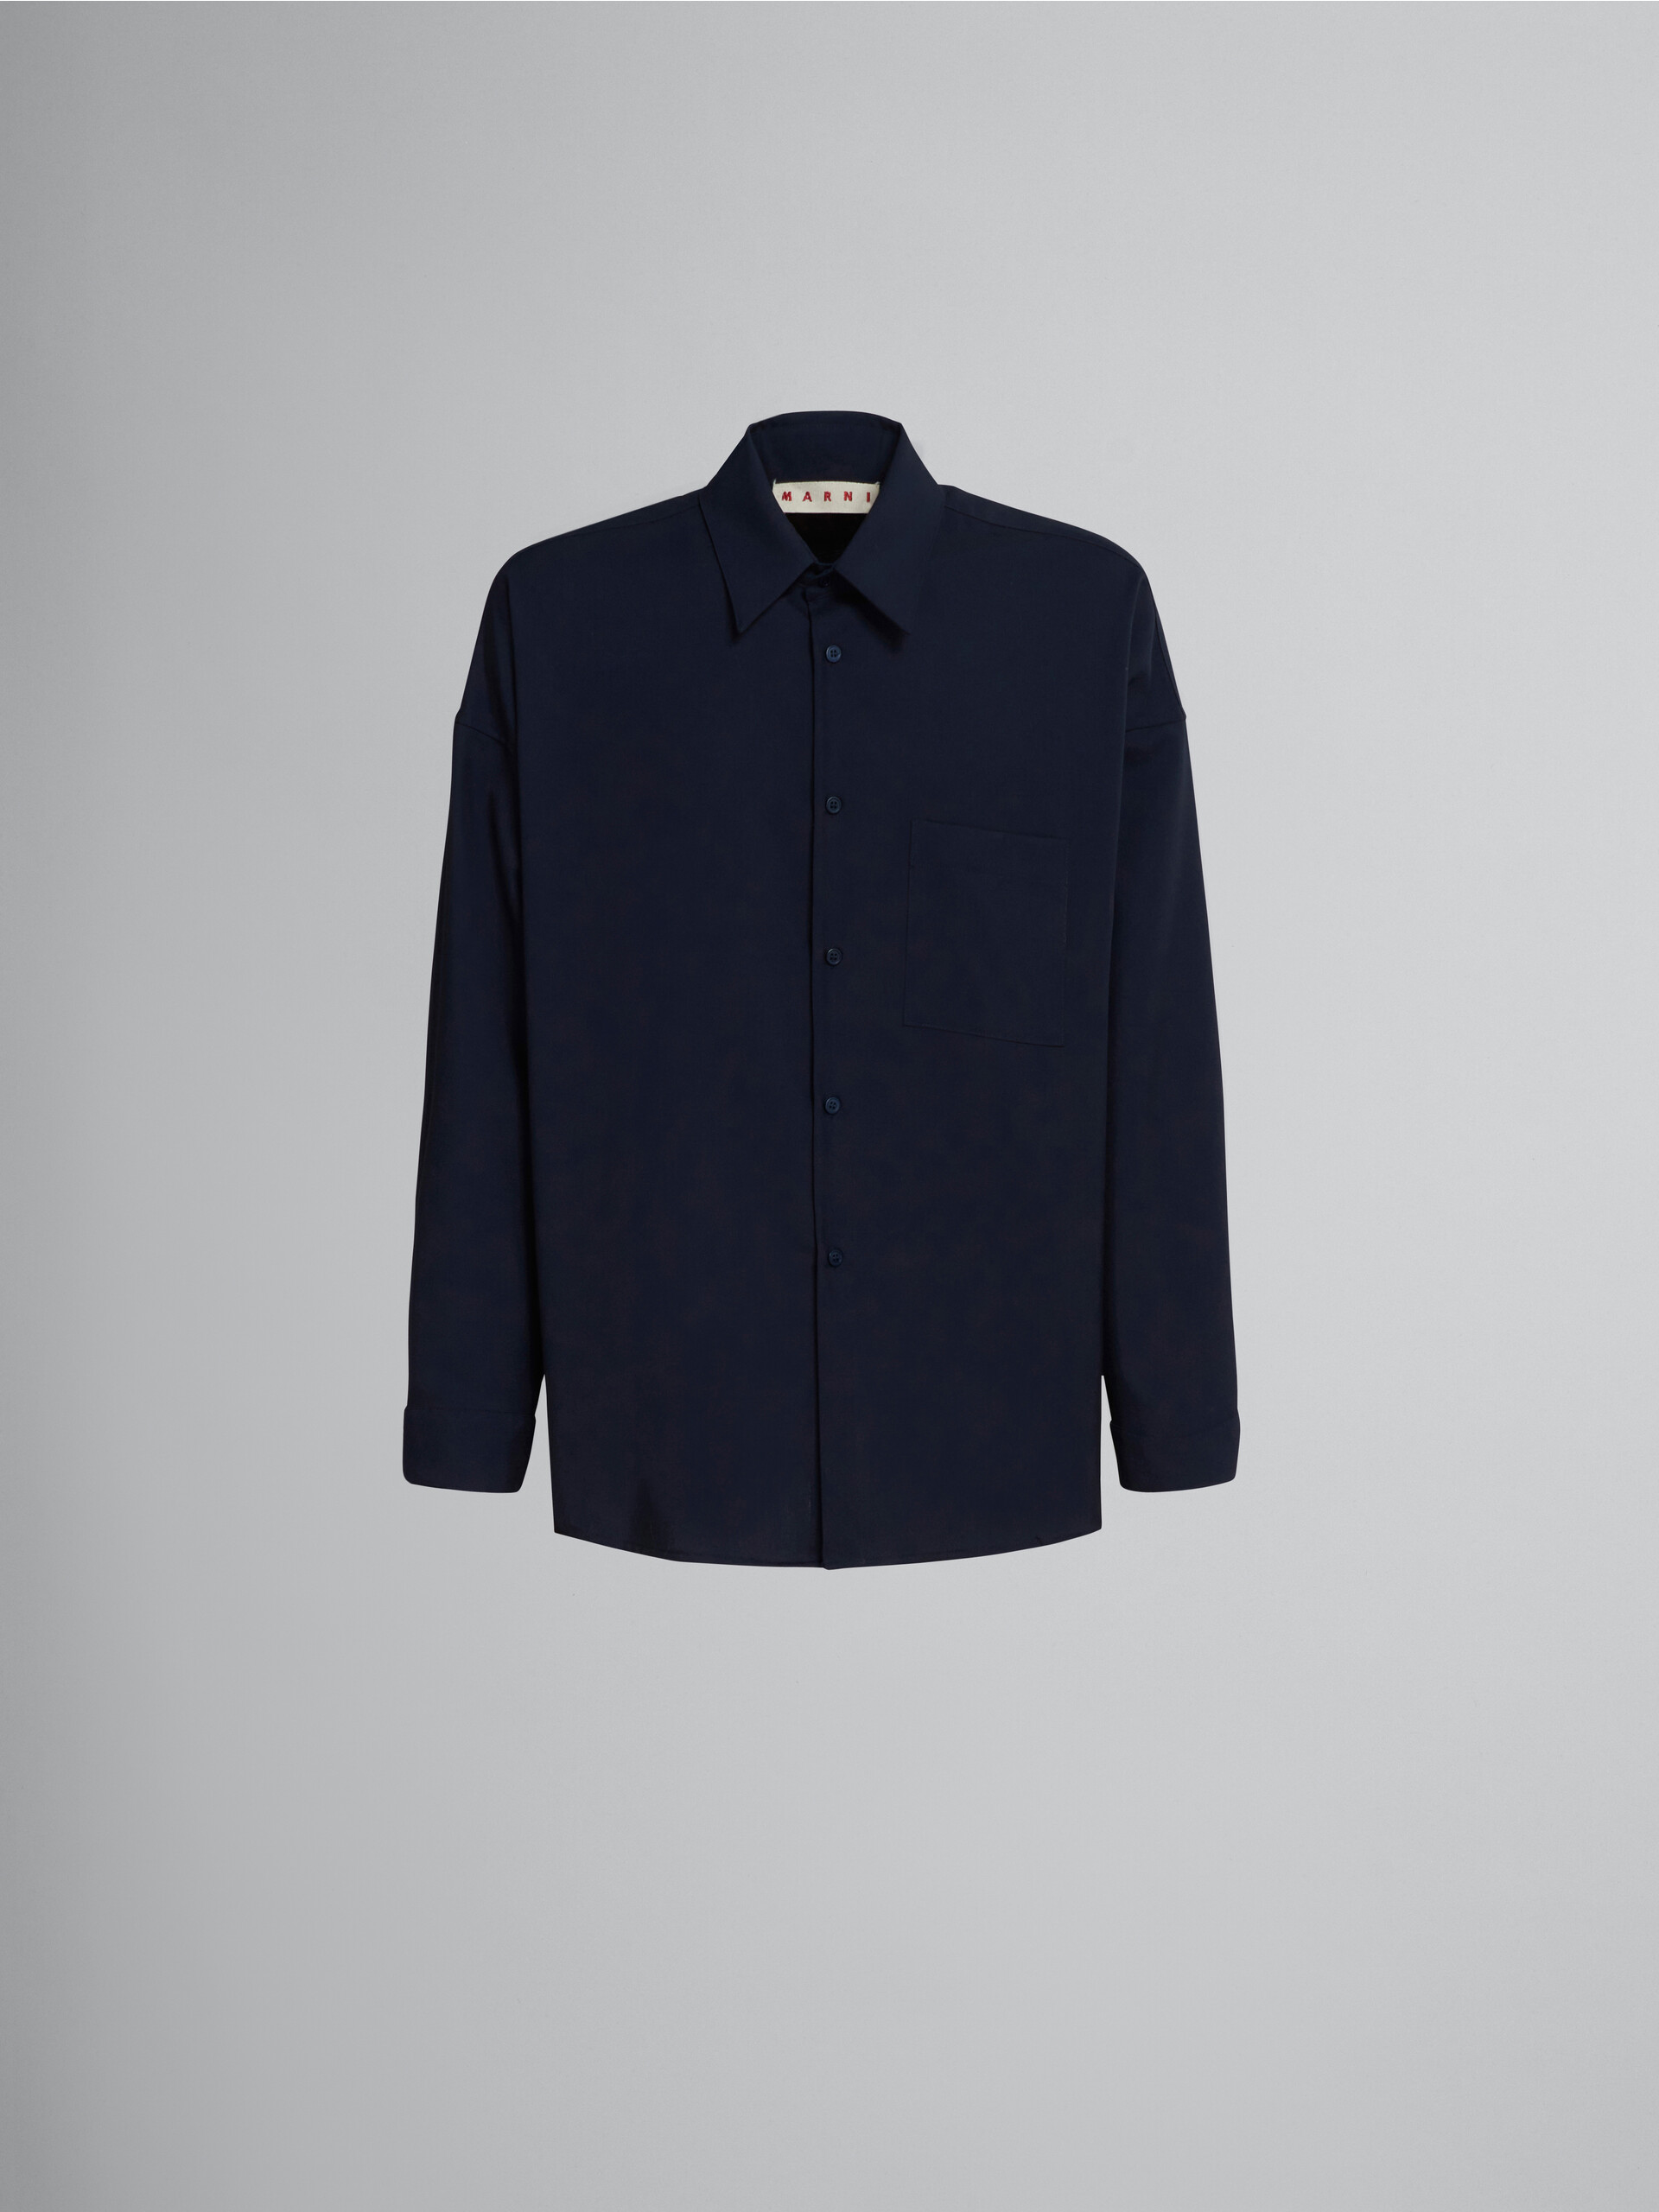 Camisa de lana tropical azul - Camisas - Image 1